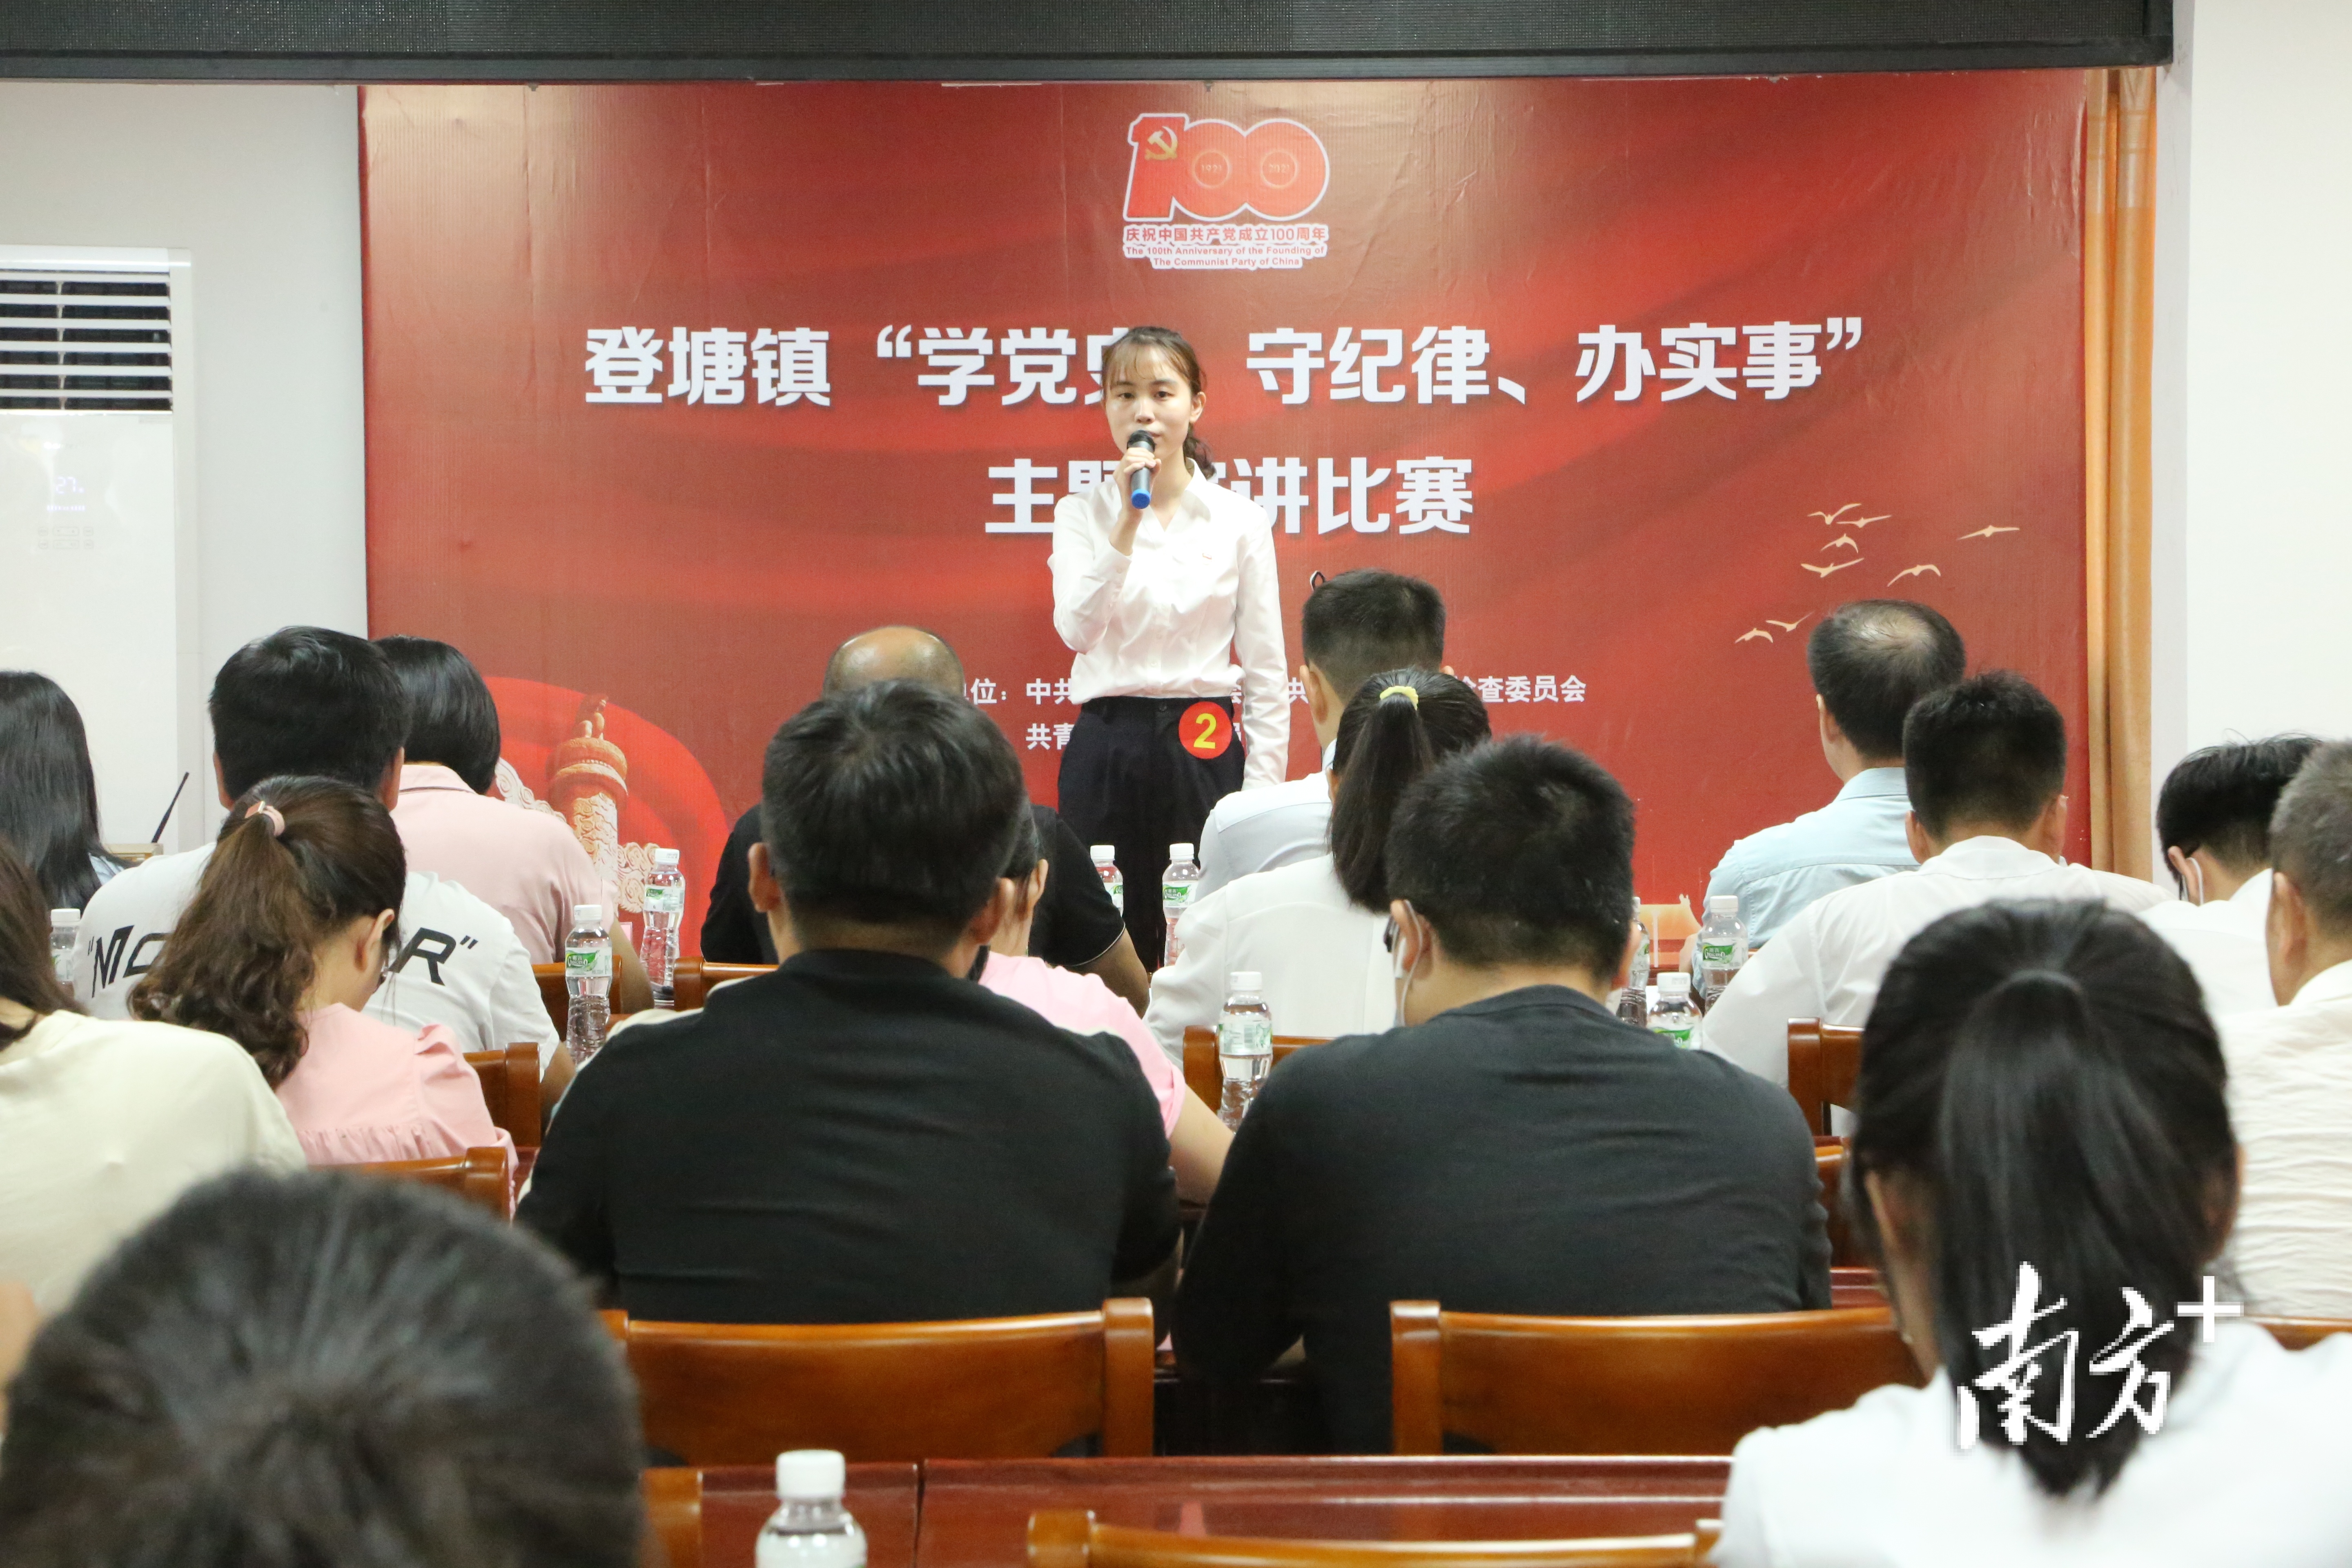 登塘镇举办“学党史、守纪律、办实事”主题演讲比赛。